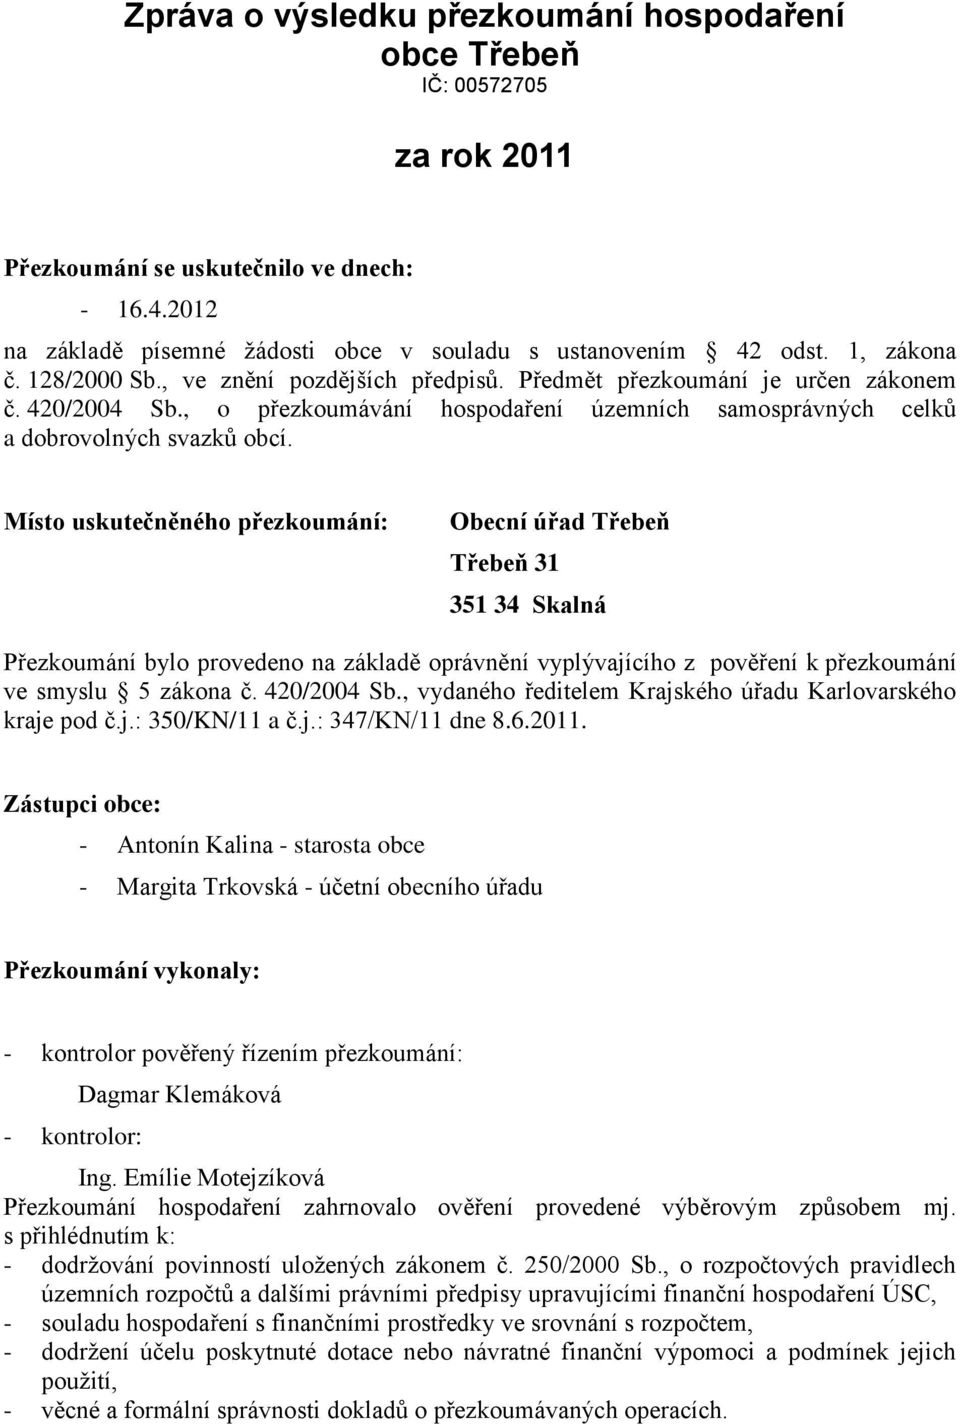 Místo uskutečněného přezkoumání: Obecní úřad Třebeň Třebeň 31 351 34 Skalná Přezkoumání bylo provedeno na základě oprávnění vyplývajícího z pověření k přezkoumání ve smyslu 5 zákona č. 420/2004 Sb.